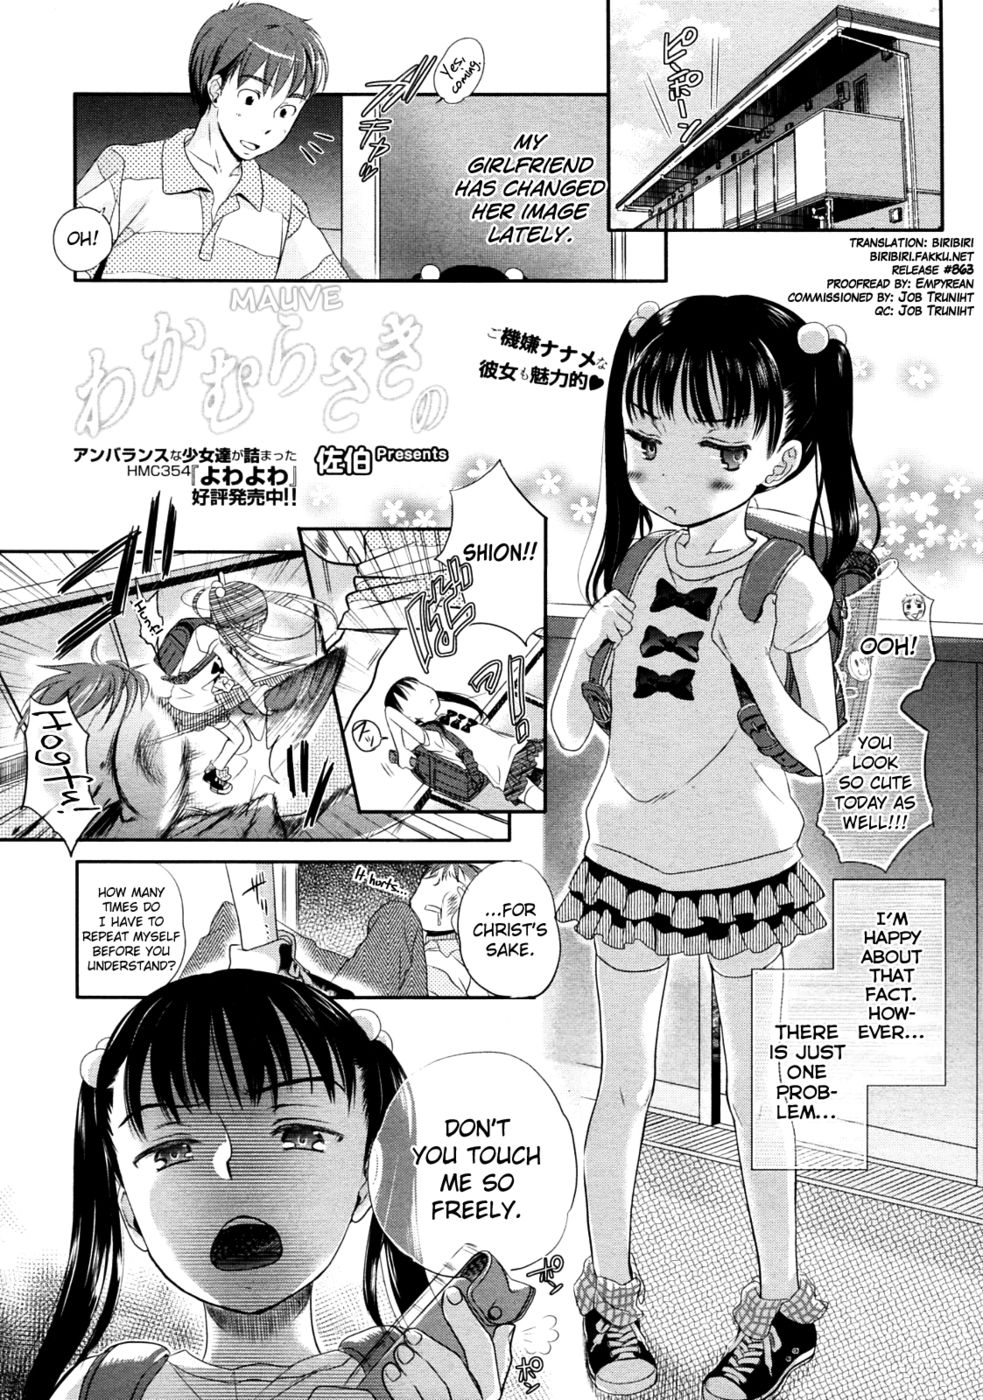 Hentai Manga Comic-Mauve-Read-1